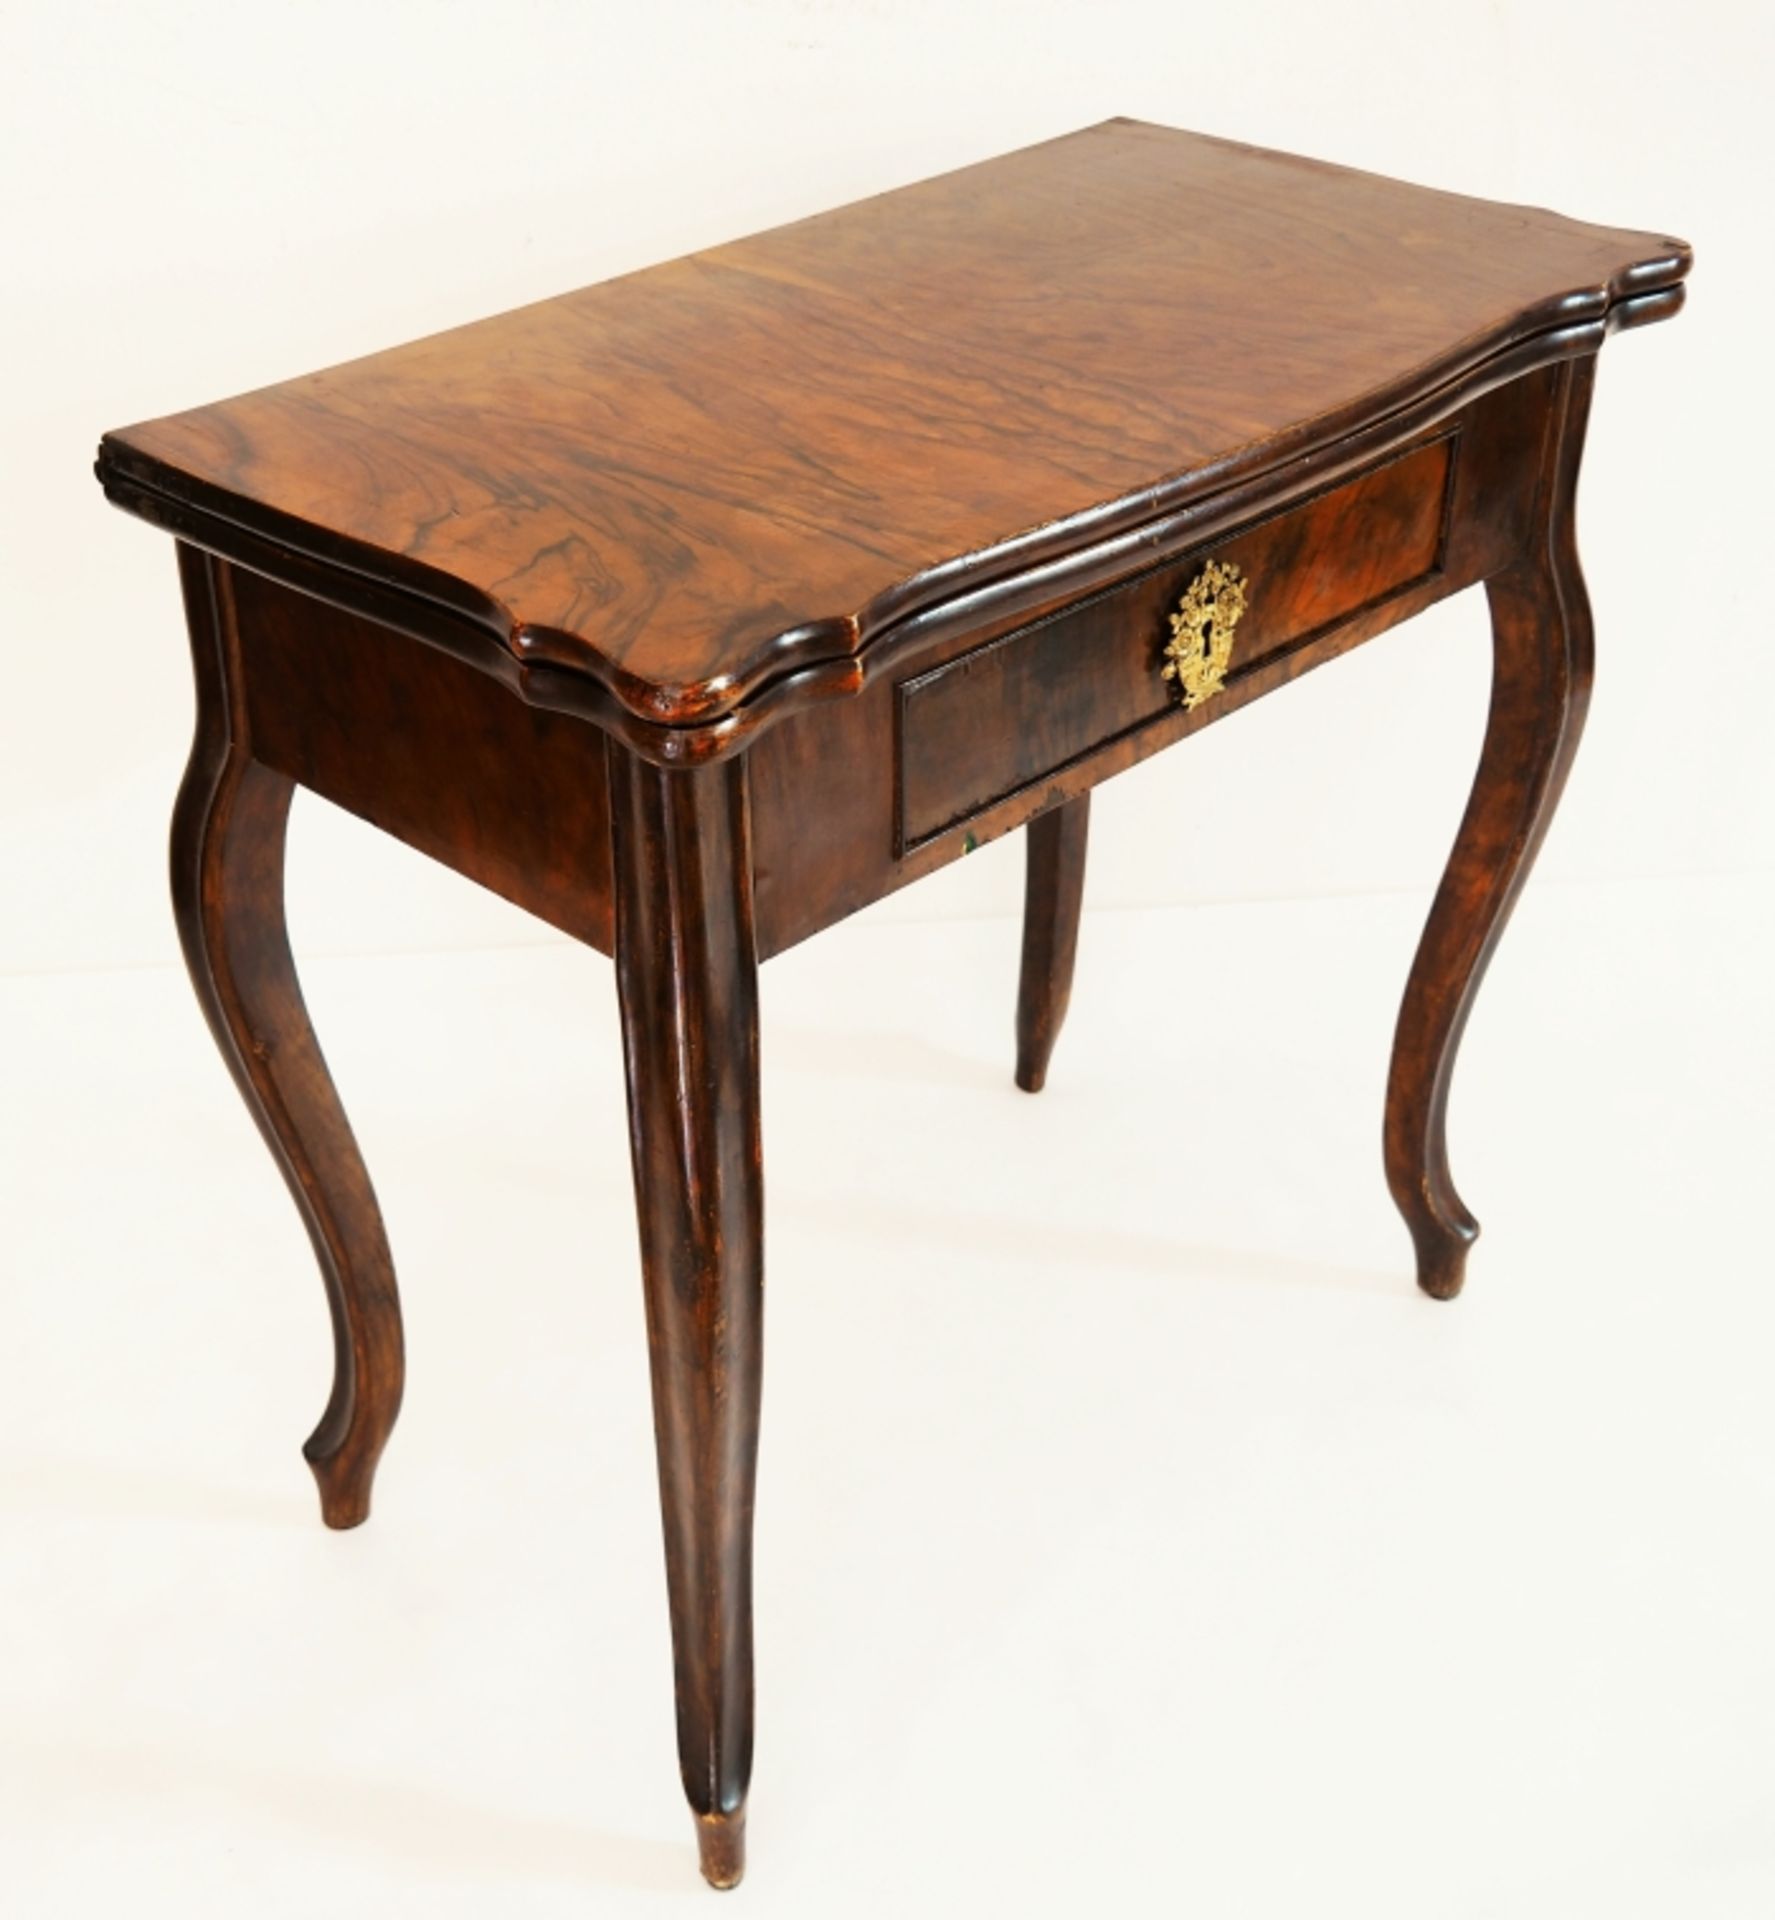 Spieltisch, um 1850, Nußbaum mit schöner Maserung. Auf vier geschwungenen hohen Beinen, dreh- und